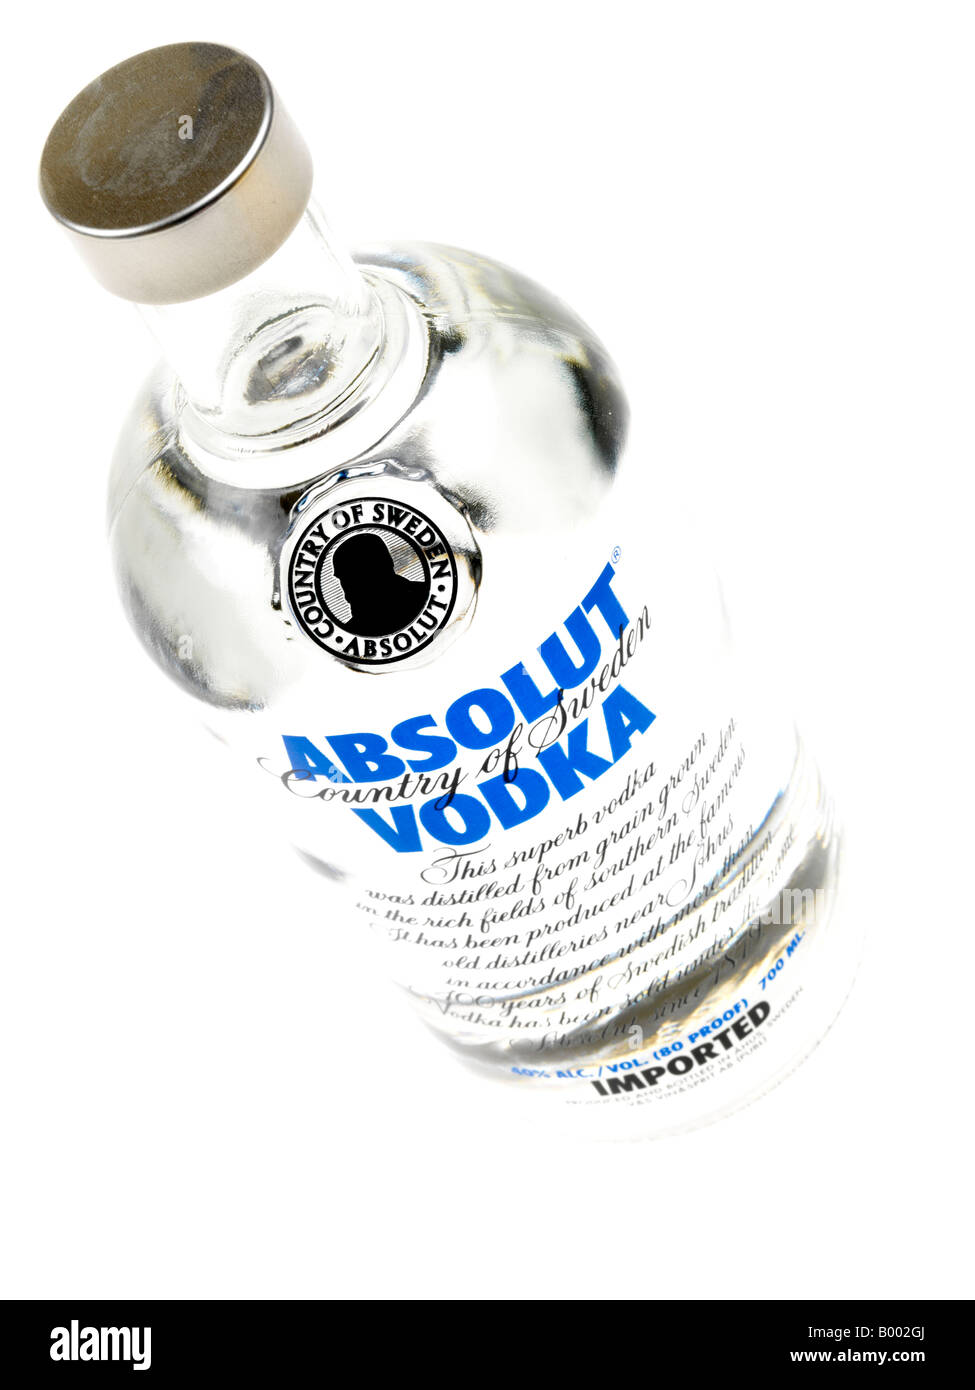 Spiritus Flasche auf weißem Hintergrund Stockfotografie - Alamy